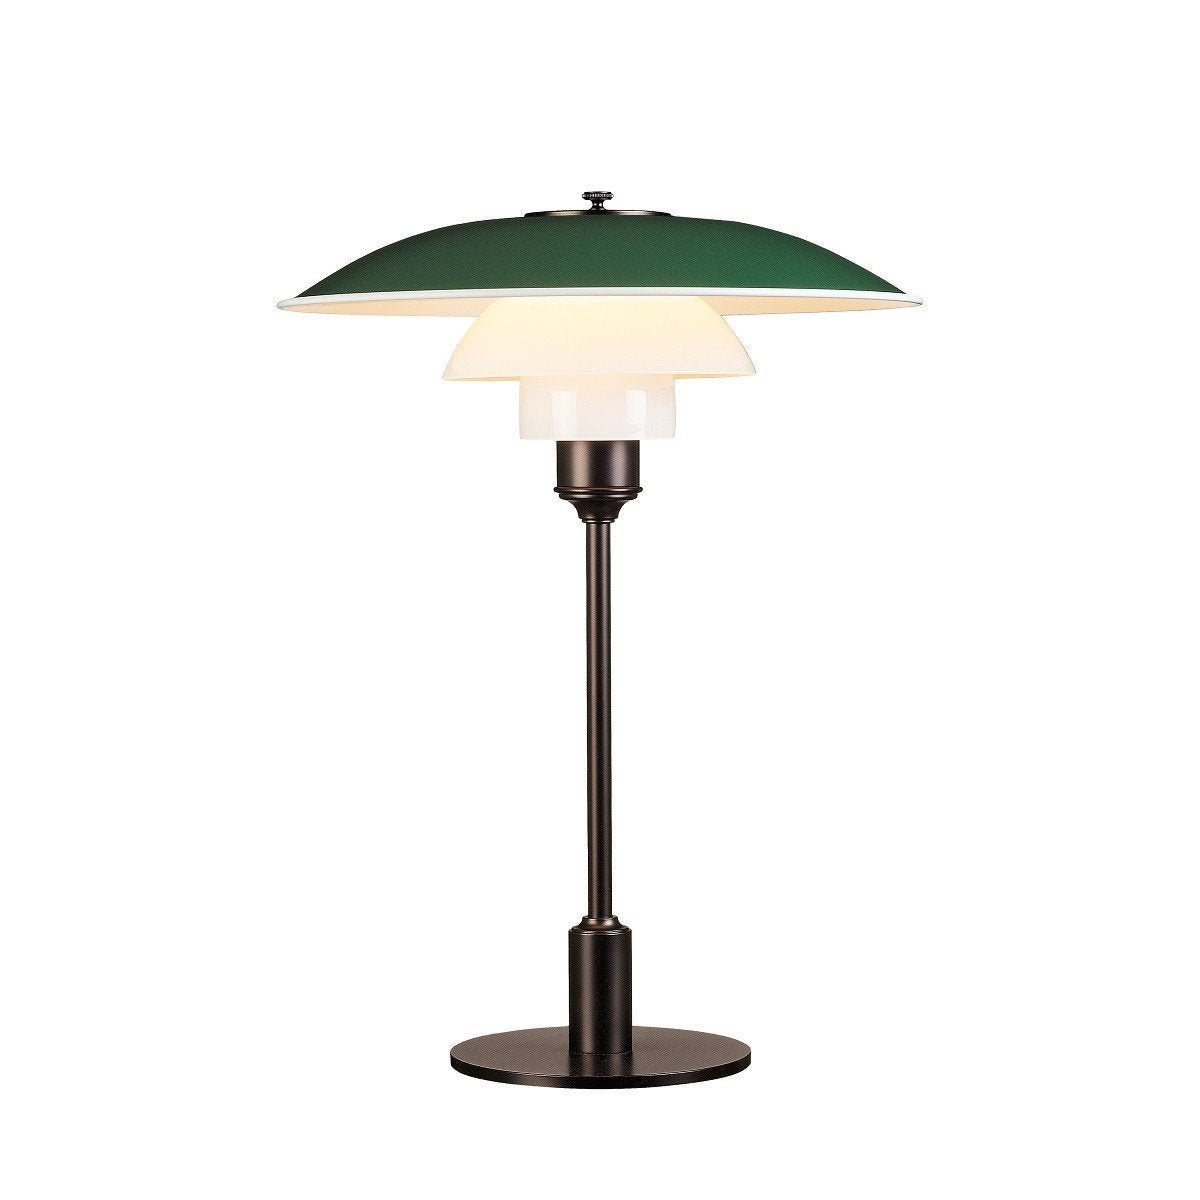 Louis Poulsen Ph 3 1/2 2 1/2 Table Lamp, Green